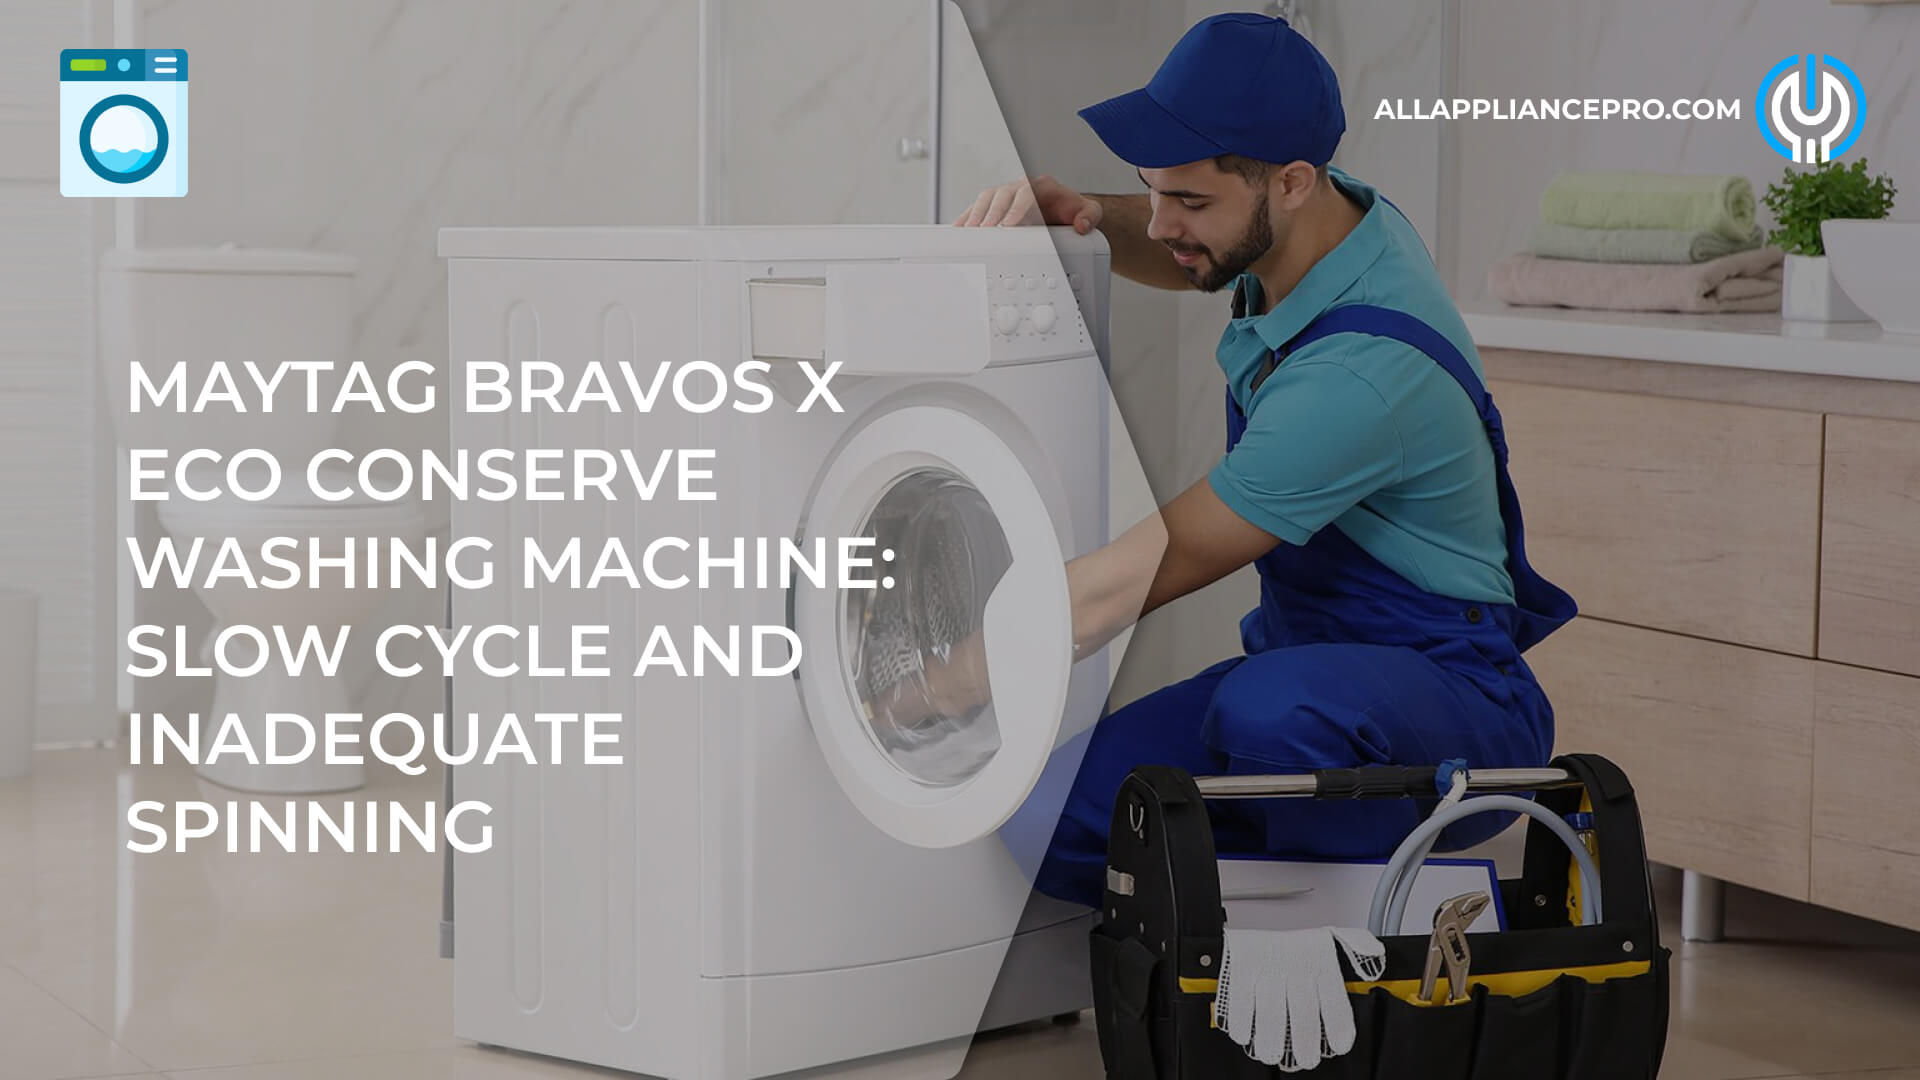 Maytag Bravos X Eco Conserve Washing Machine